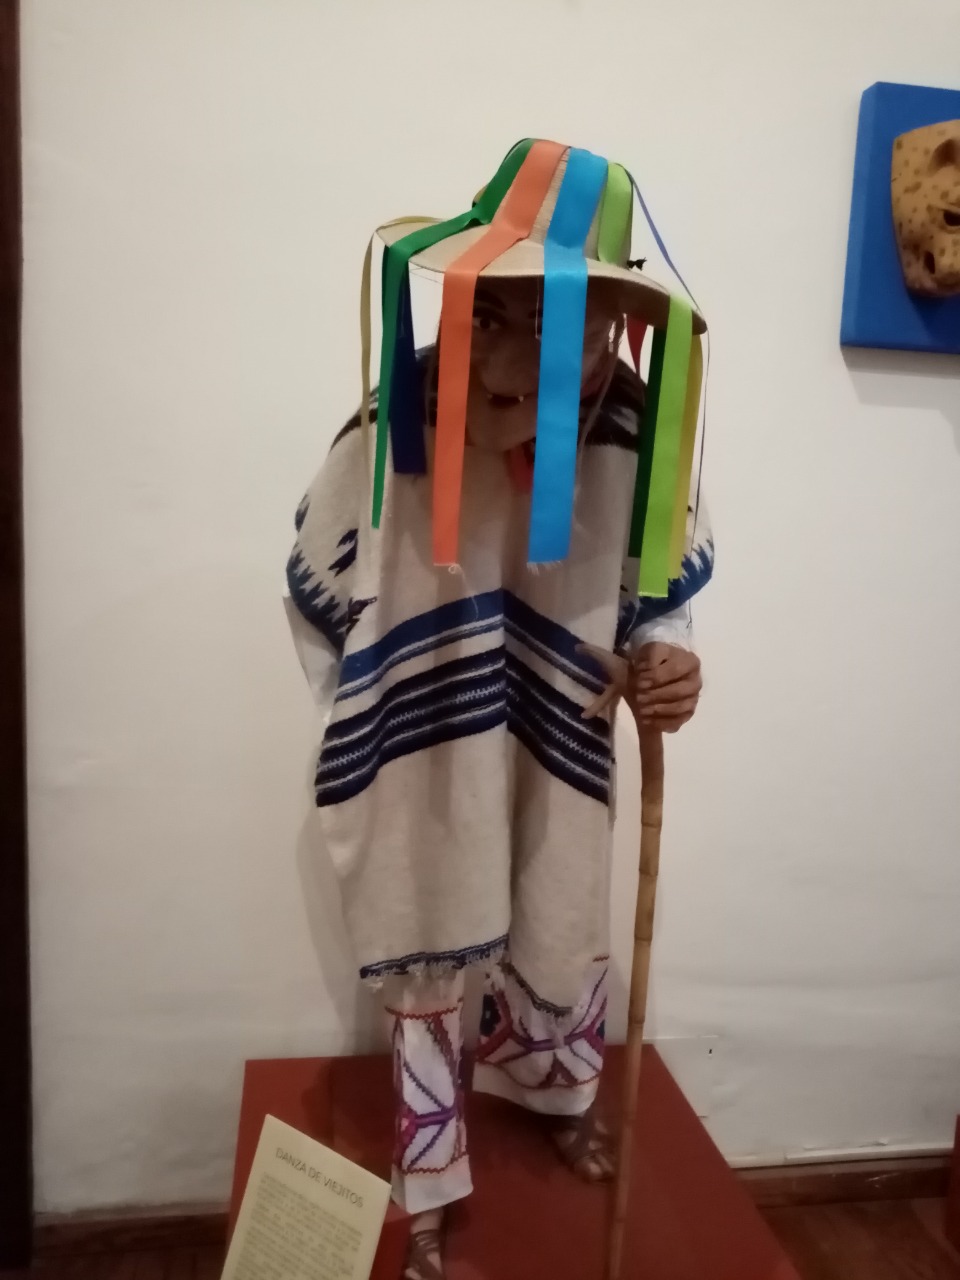 La Secretaría de Cultura de San Luis Potosí, invita al público a visitar de forma virtual el Museo Nacional de la Máscara y conocer cada una de sus salas